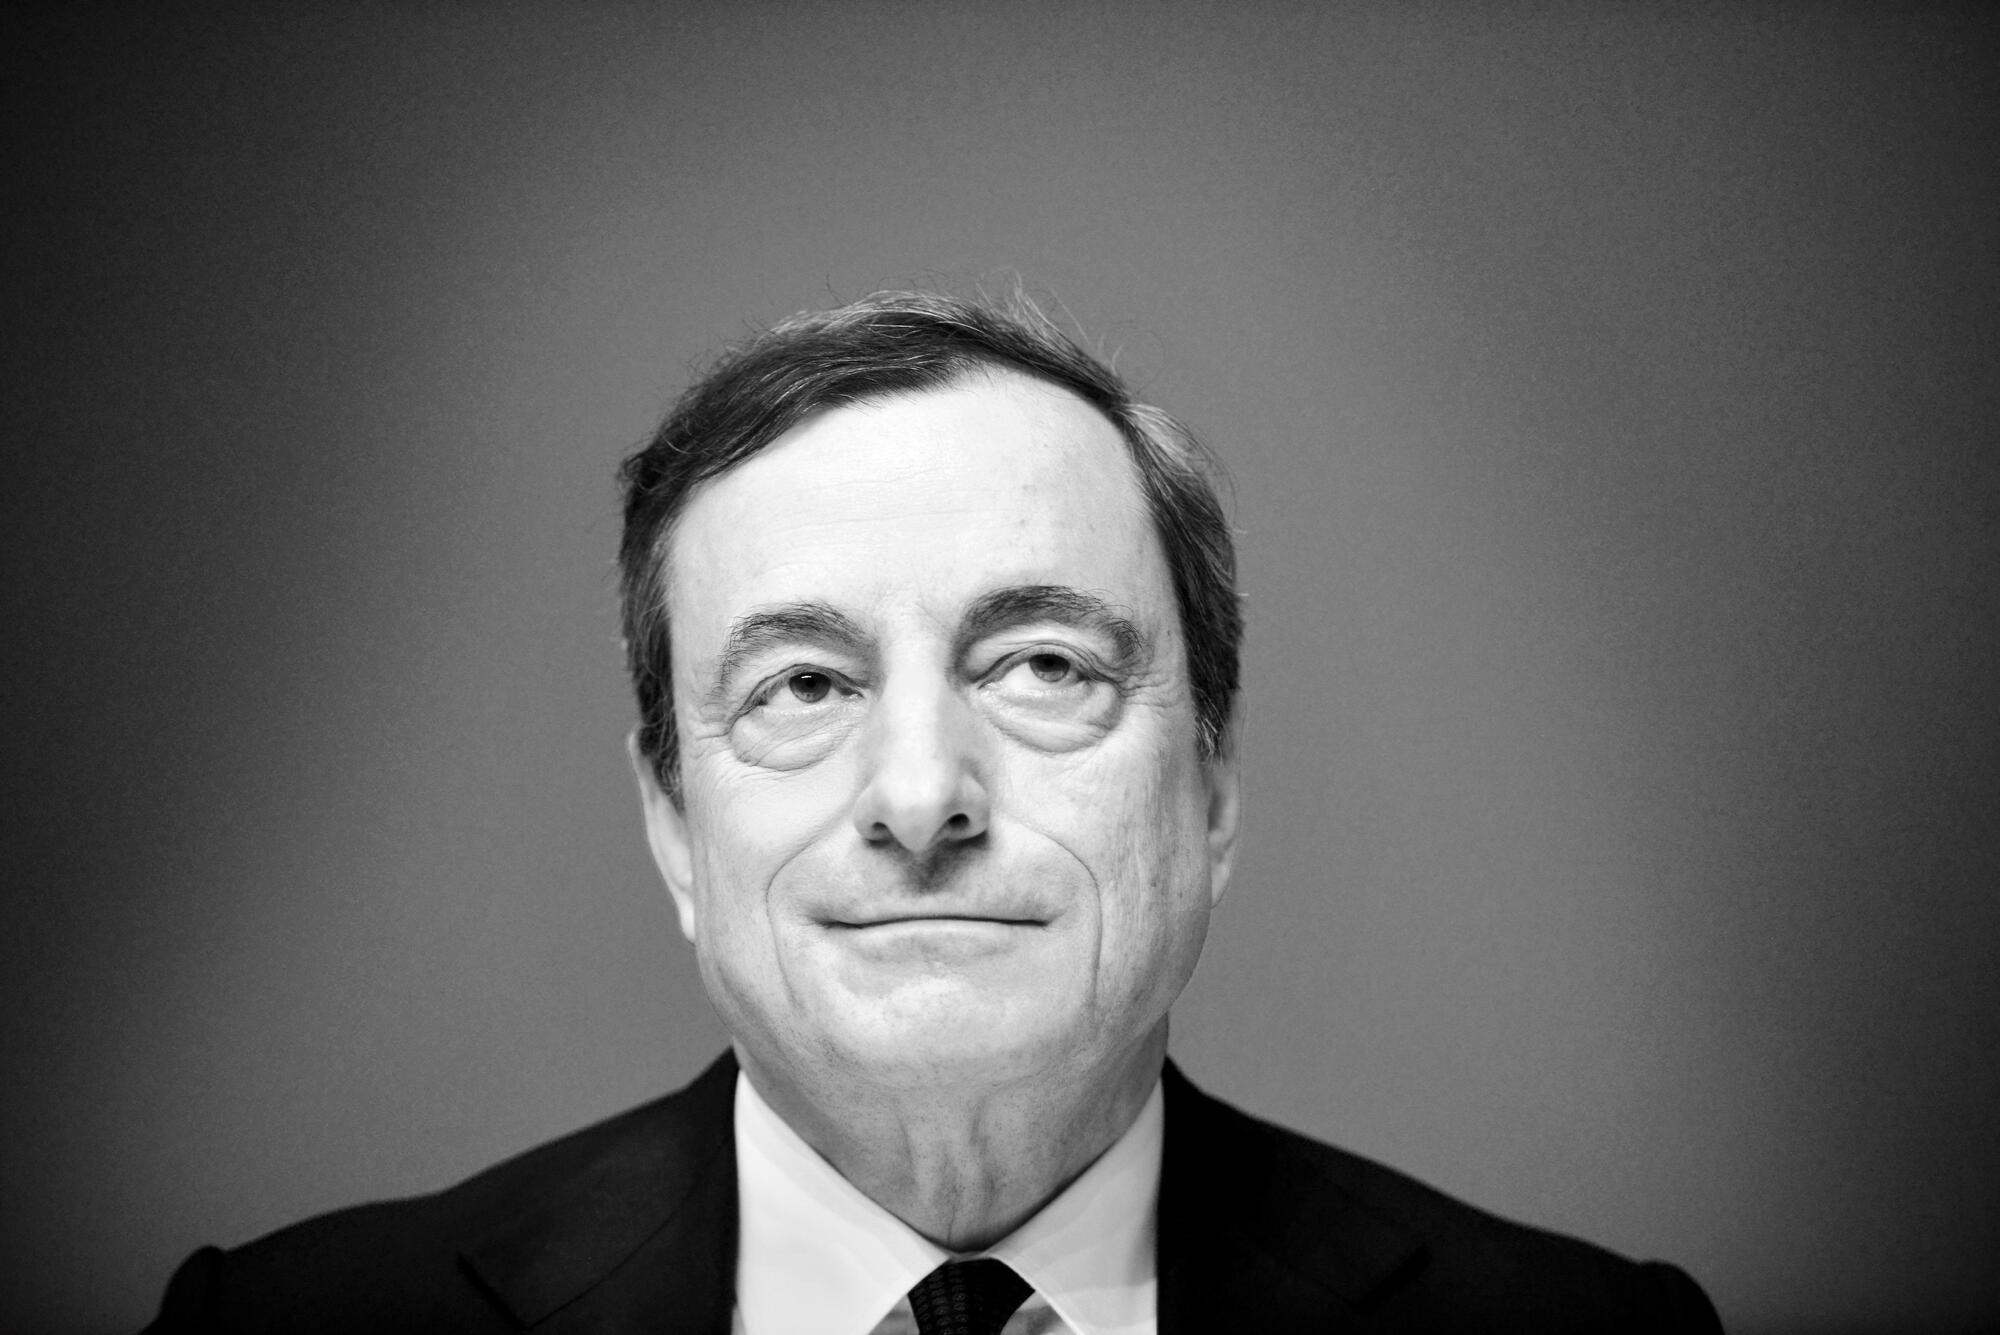 Mario Draghi bn getty